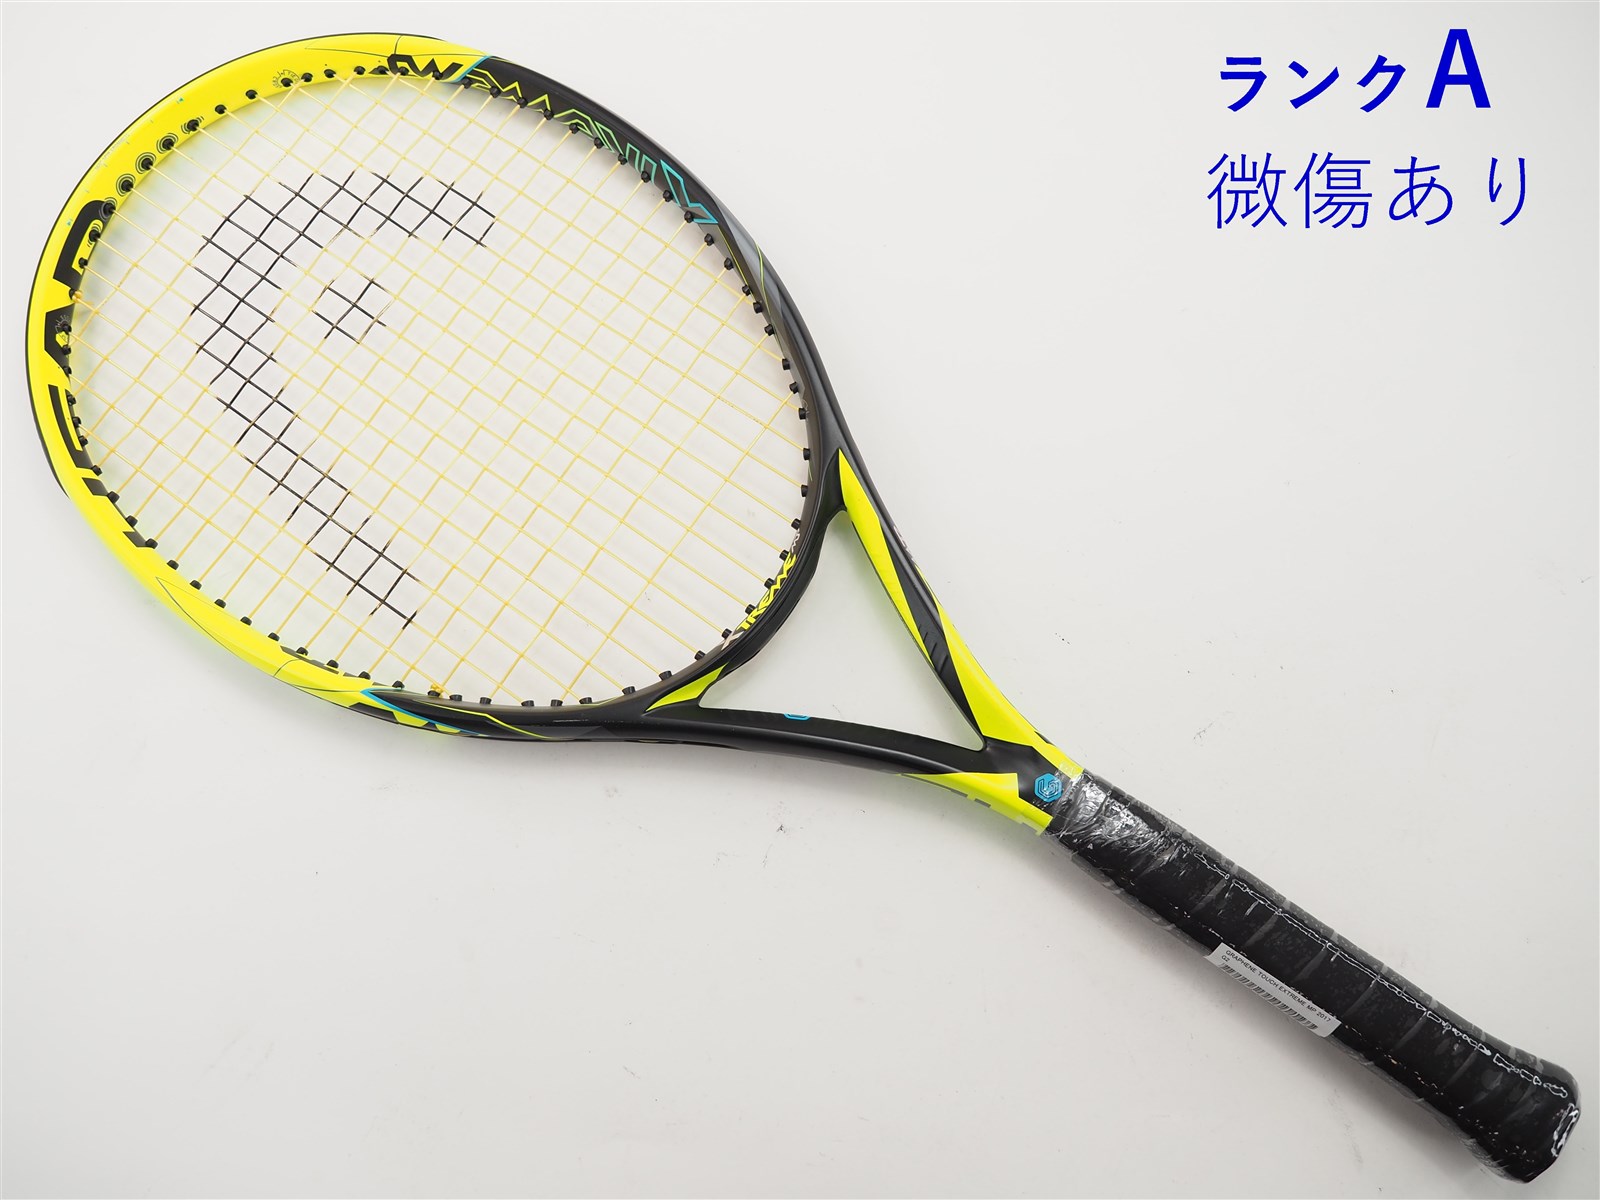 テニスラケット ヘッド グラフィン エクストリーム プロ 2014年モデル (G3)HEAD GRAPHENE EXTREME PRO 2014